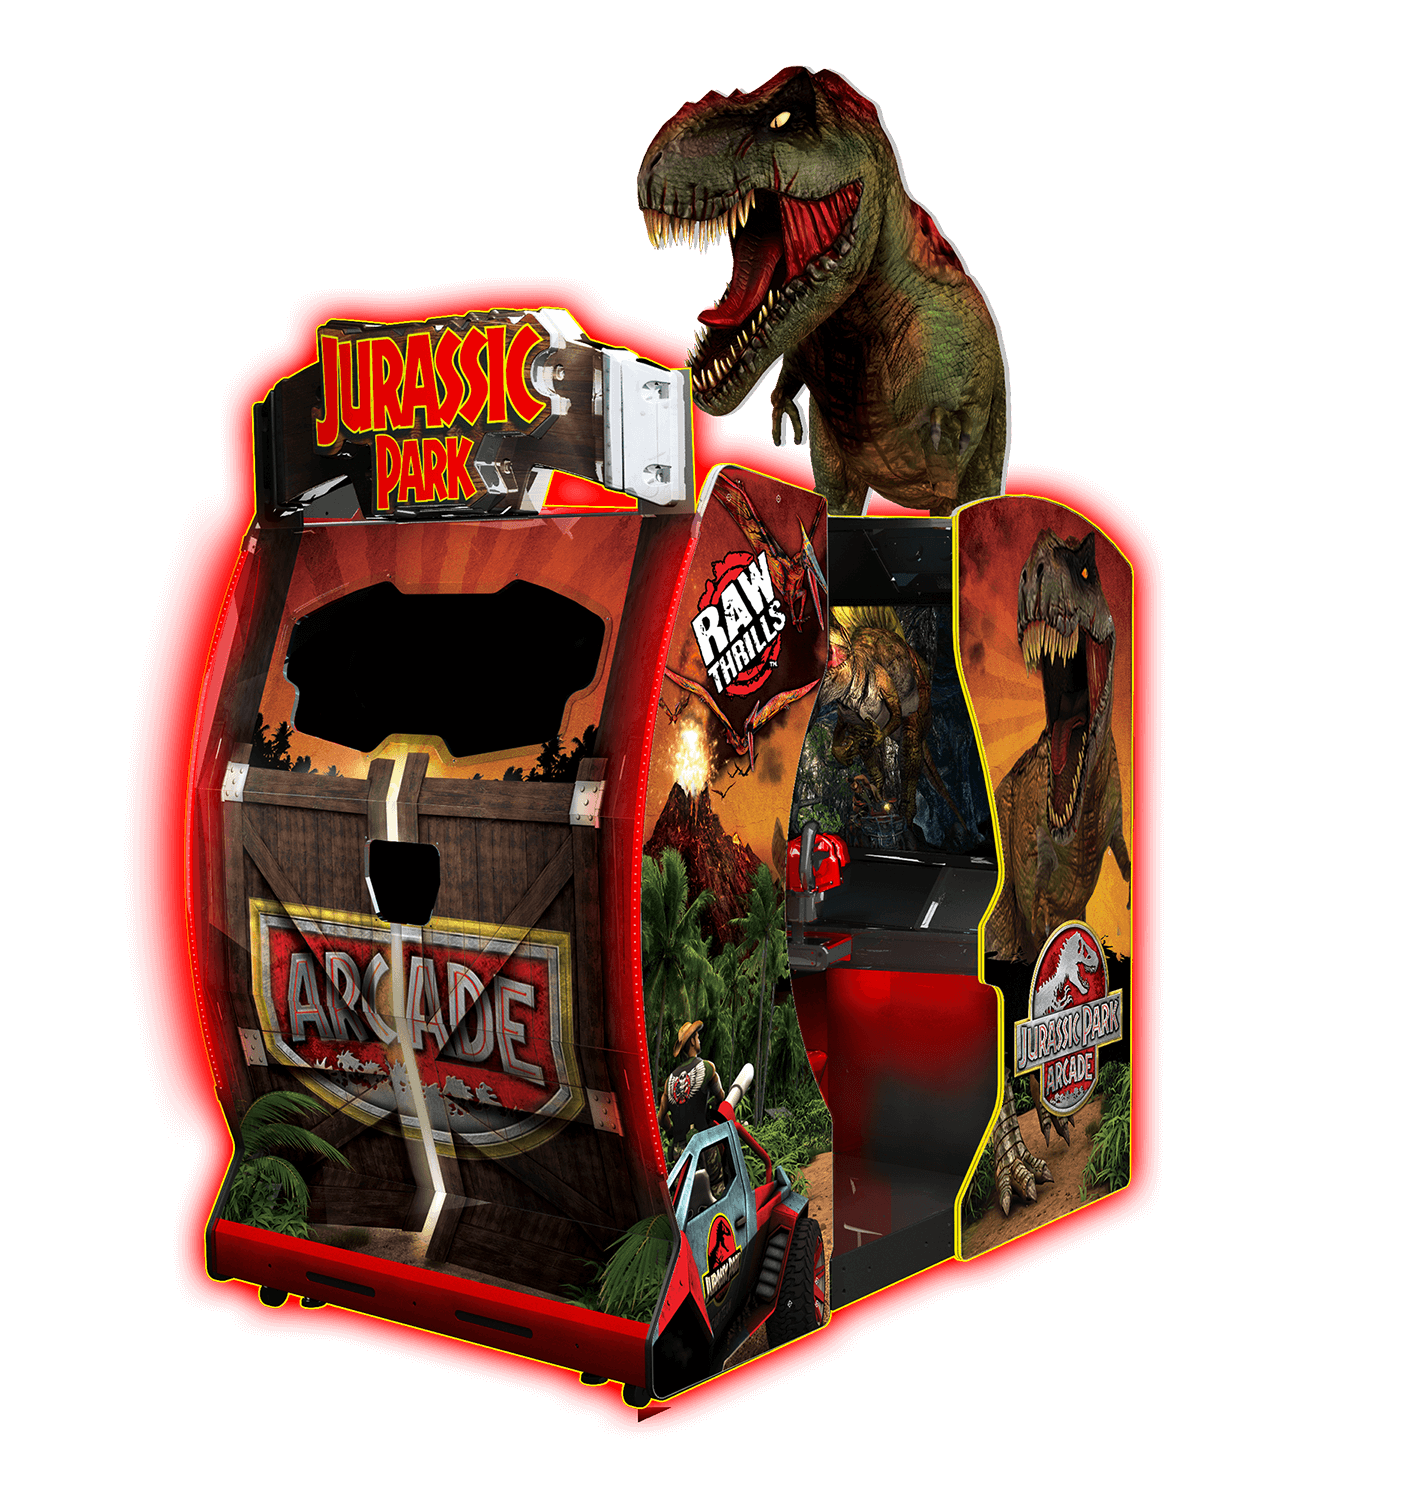 Raw Thrills - Jurassic Park Arcade™ Commercial Arcade - 026009N